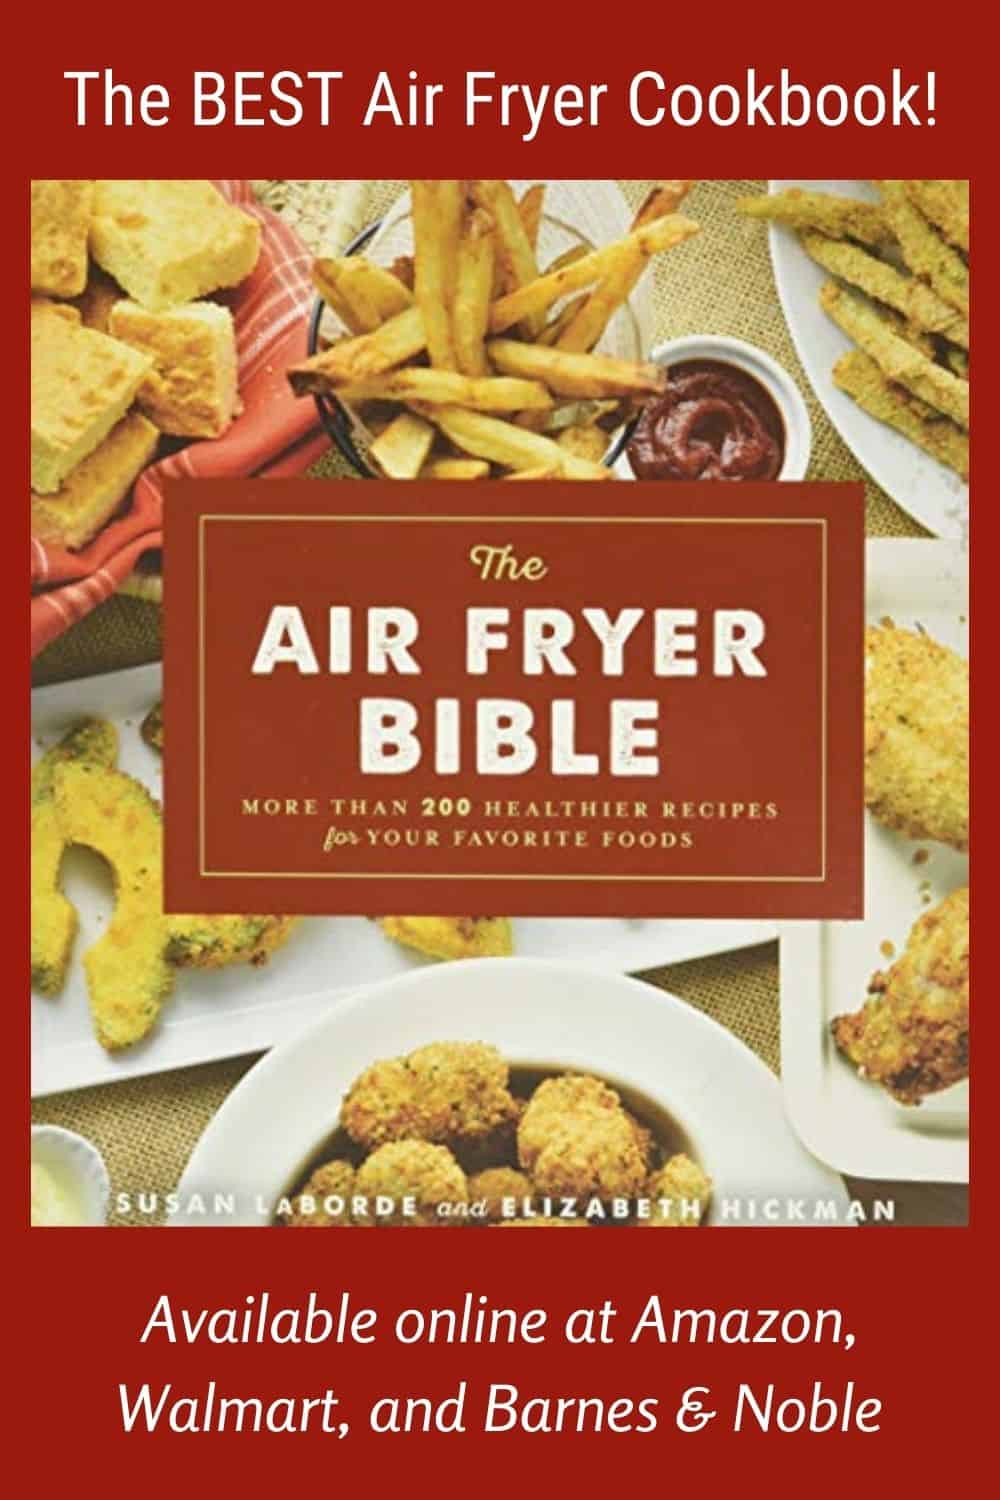 The Air Fryer Bible - Best Air Fryer Cookbook